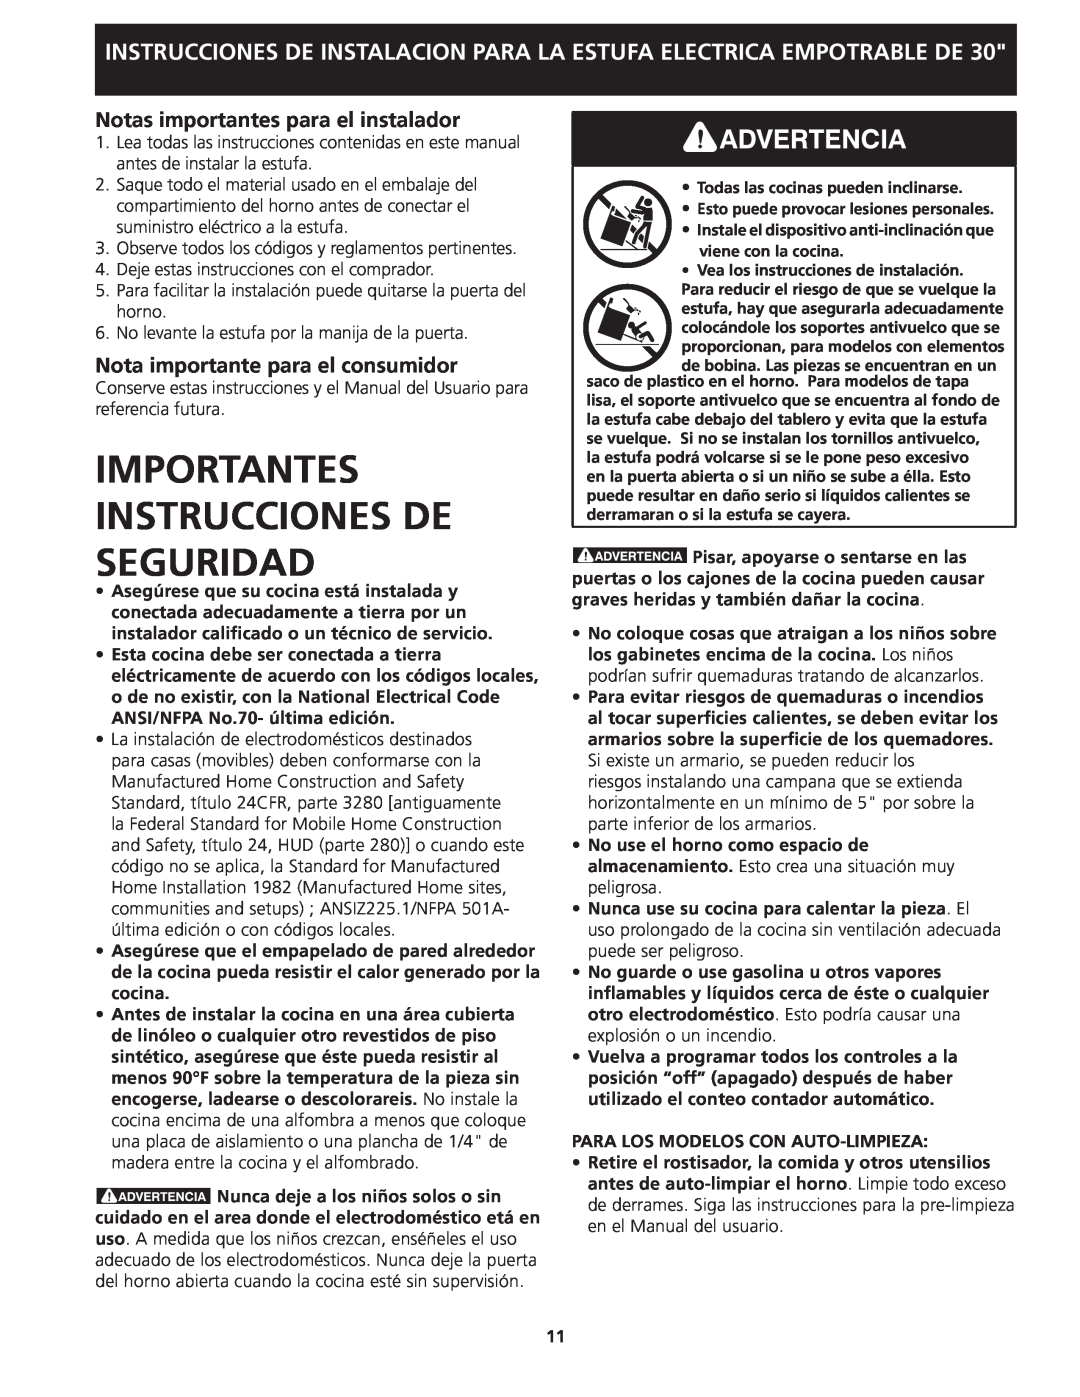 Frigidaire 318201613 installation instructions Importantes Instrucciones De Seguridad, Notas importantes para el instalador 